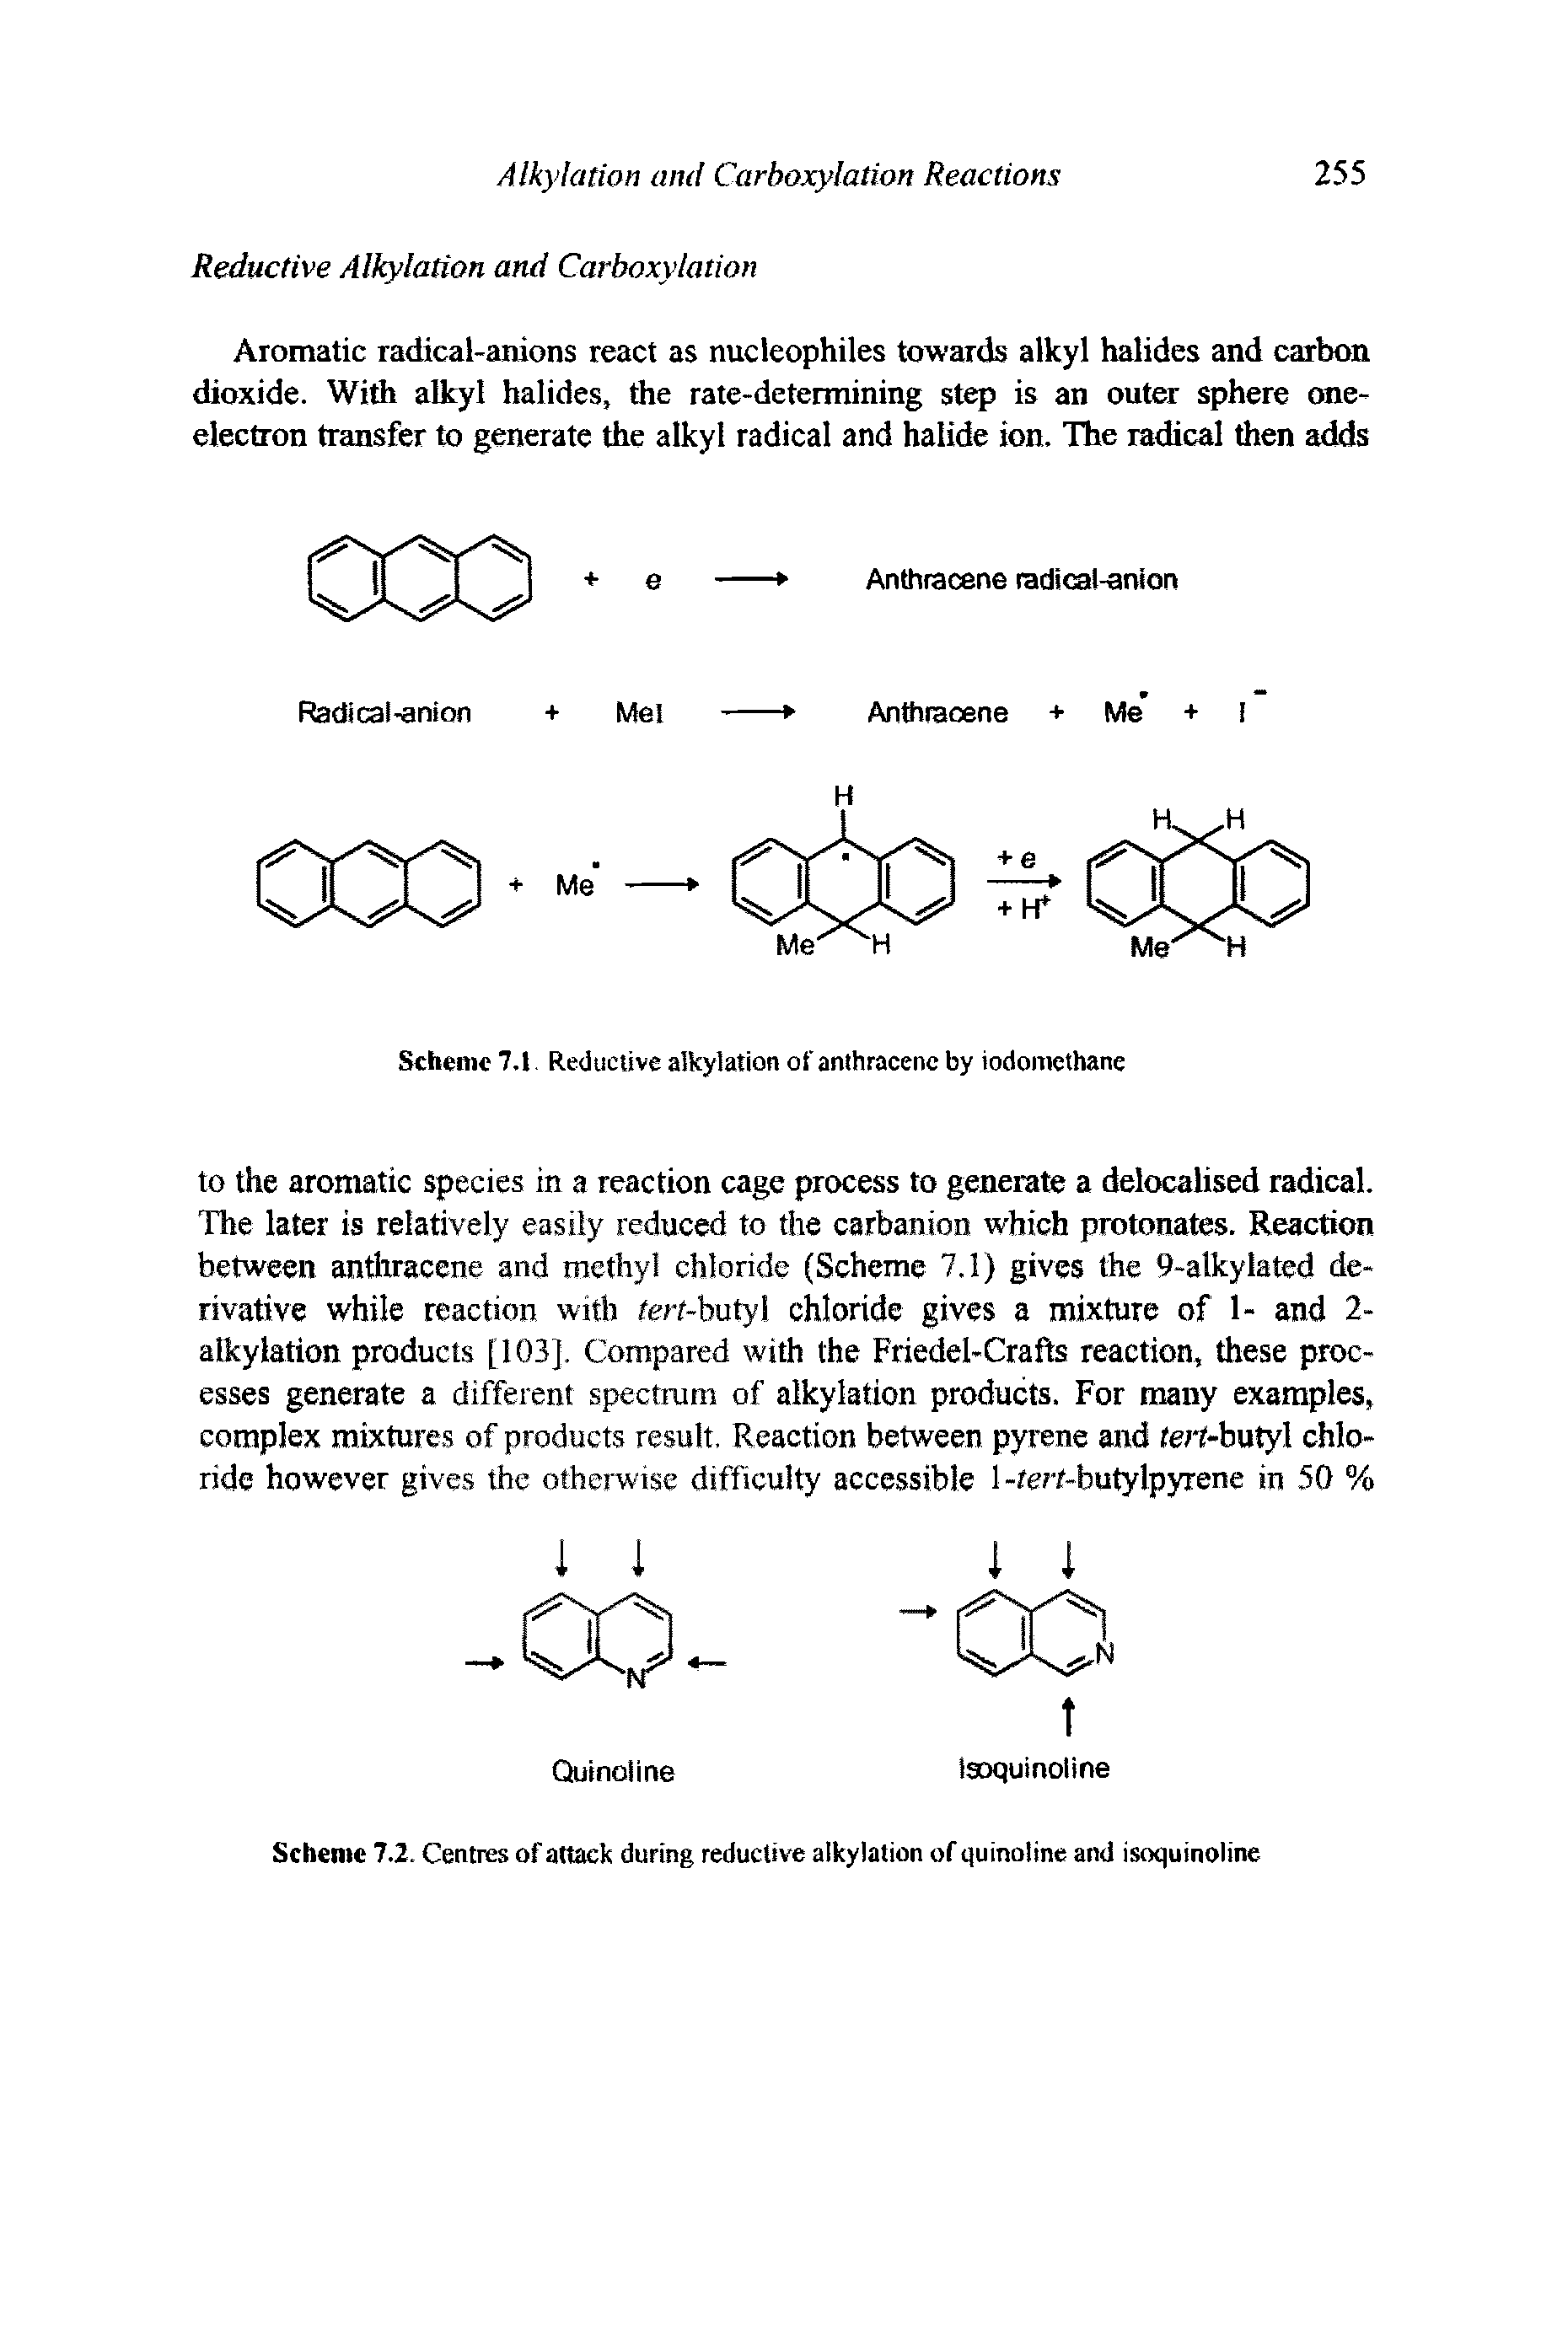 Scheme 7.2. Centres of attack during reductive alkylation of quinoline and isoquinoline...